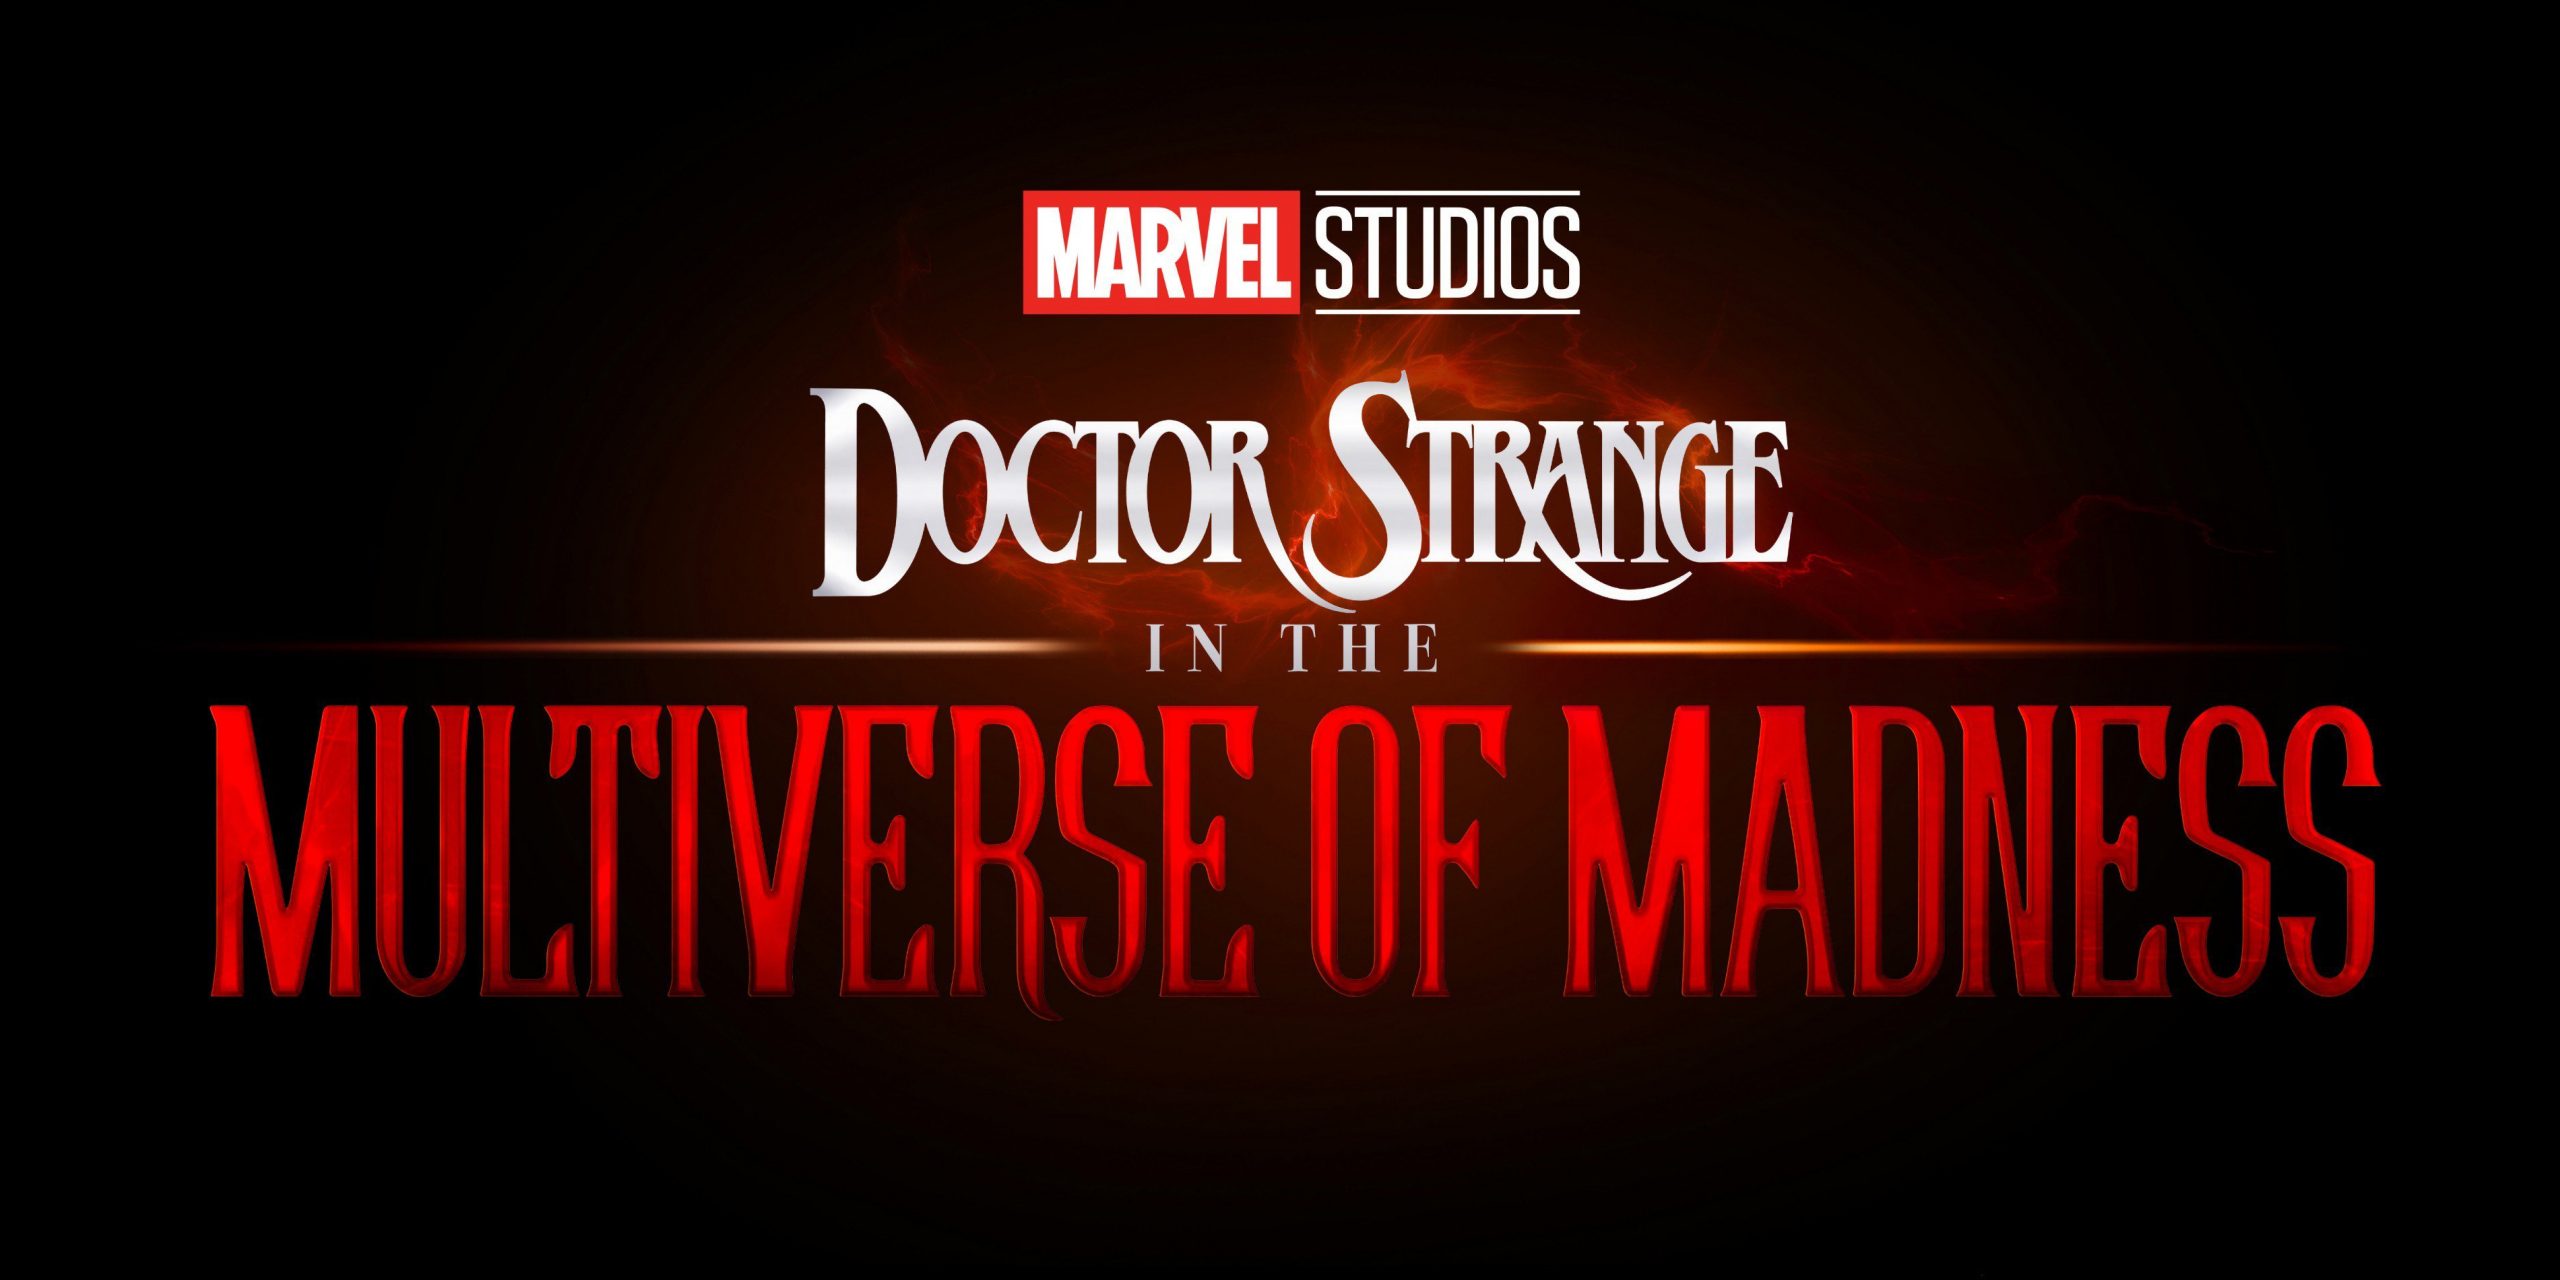 Первый трейлер «Локи», анонс «Железного сердца» и много подробностей о будущих проектах Marvel